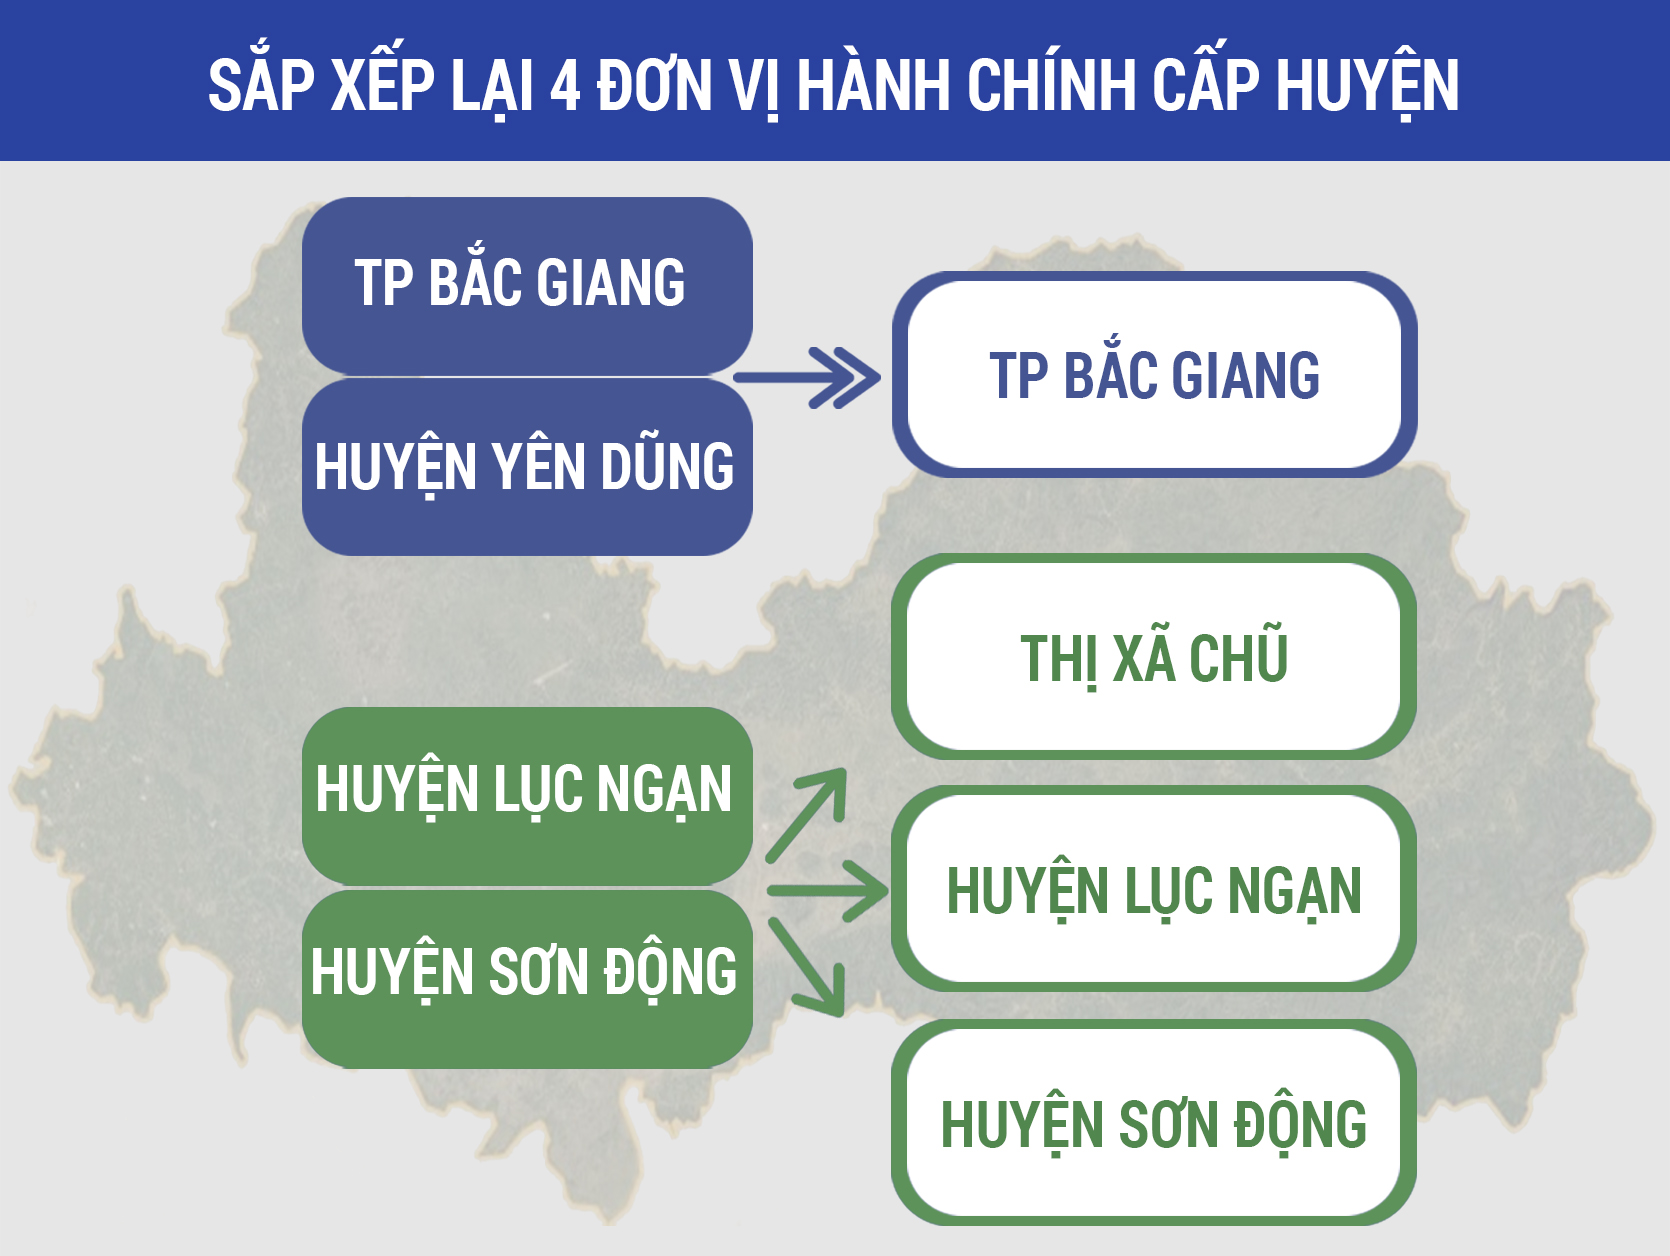 Bắc Giang thực hiện sắp xếp lại 4 đơn vị hành chính cấp huyện, sắp...|https://bdt.bacgiang.gov.vn/chi-tiet-tin-tuc/-/asset_publisher/ivaa62McqTU0/content/bac-giang-thuc-hien-sap-xep-lai-4-on-vi-hanh-chinh-cap-huyen-sap-xep-32-on-vi-hanh-chinh-xa-phuong-giai-oan-2023-2025